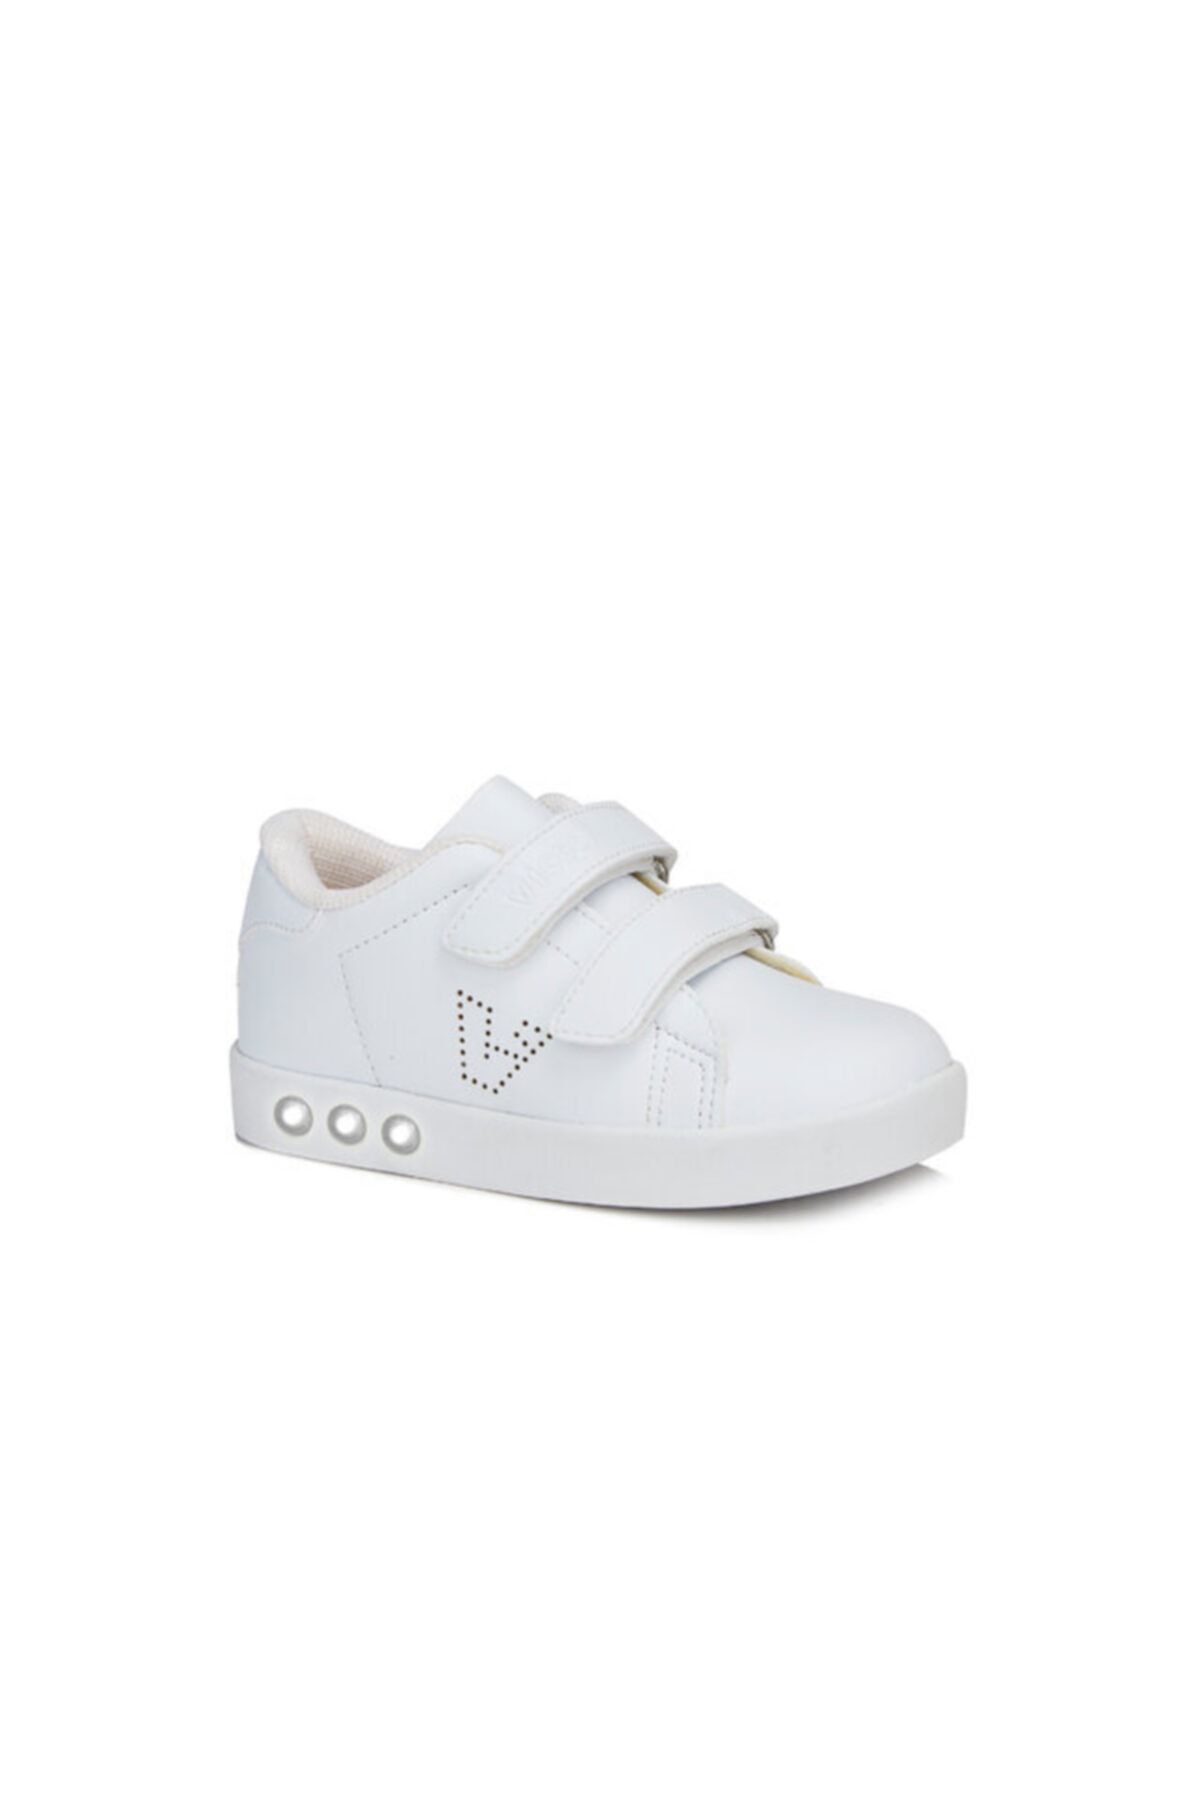 Vicco Oyo Unisex Bebe Beyaz Spor Ayakkabı (313.b19k.100-11)